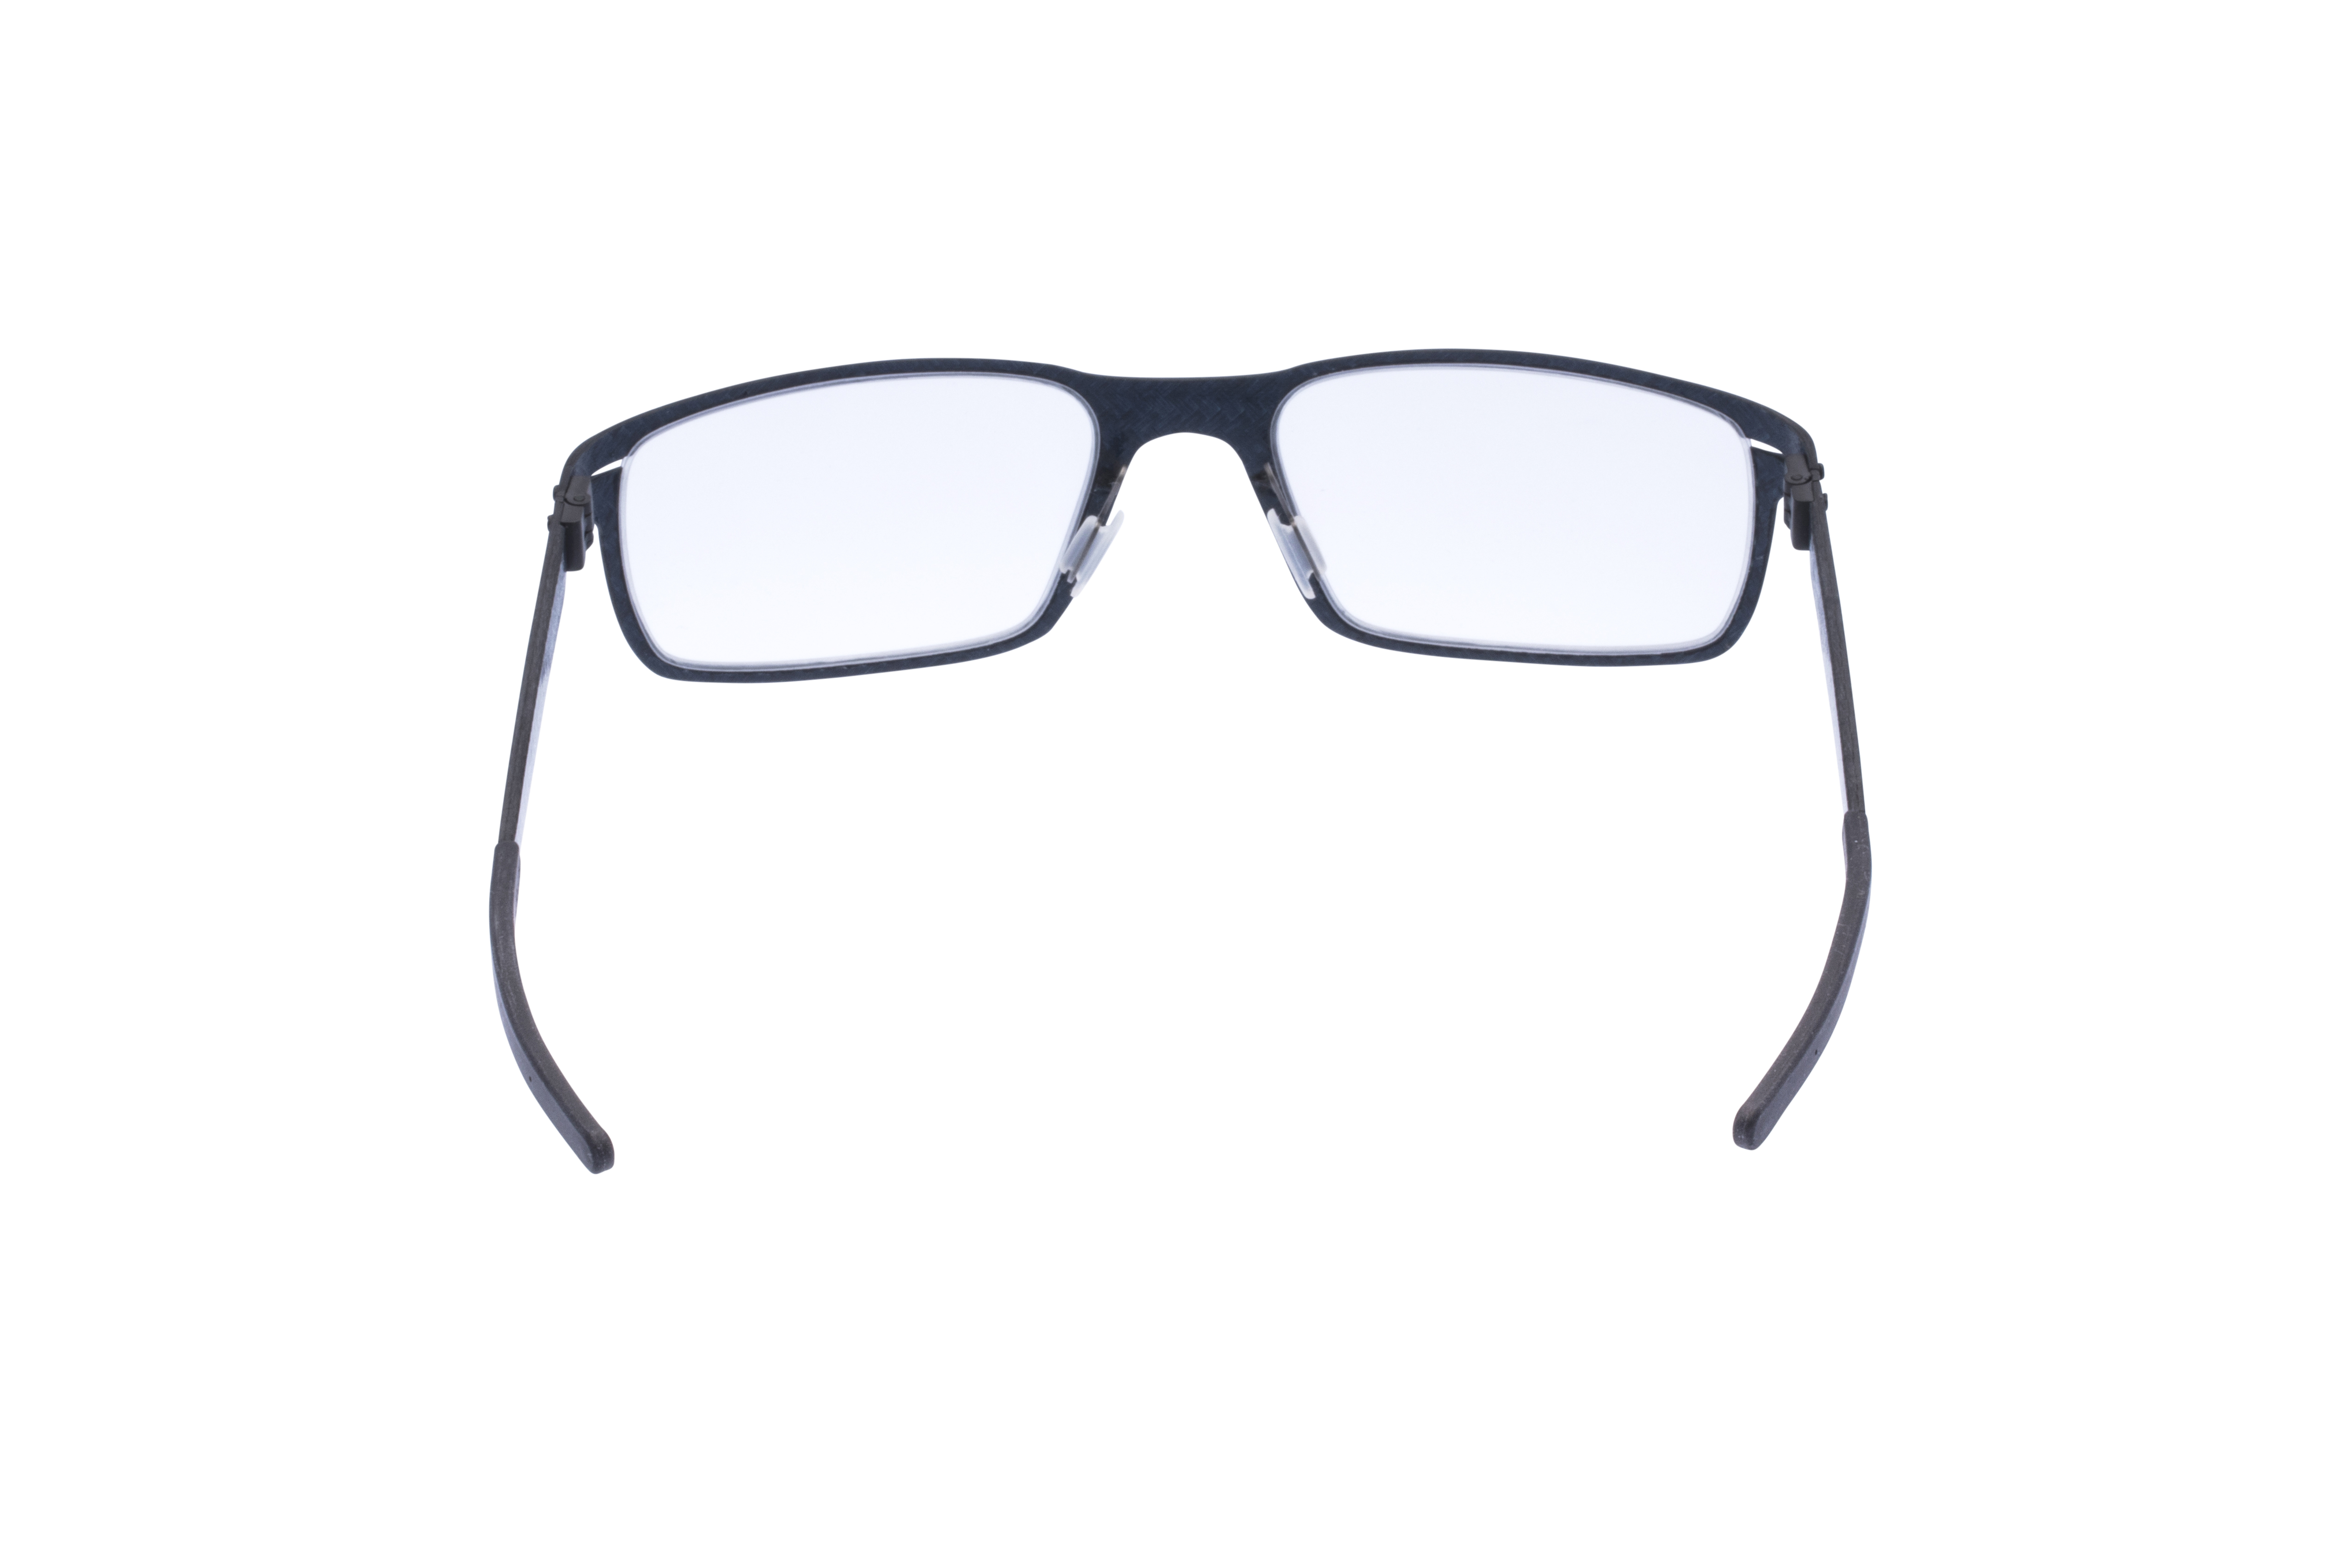 360 Grad Ansicht 12 Blac Dunes, Brille auf Weiß - Fassung bei KUNK